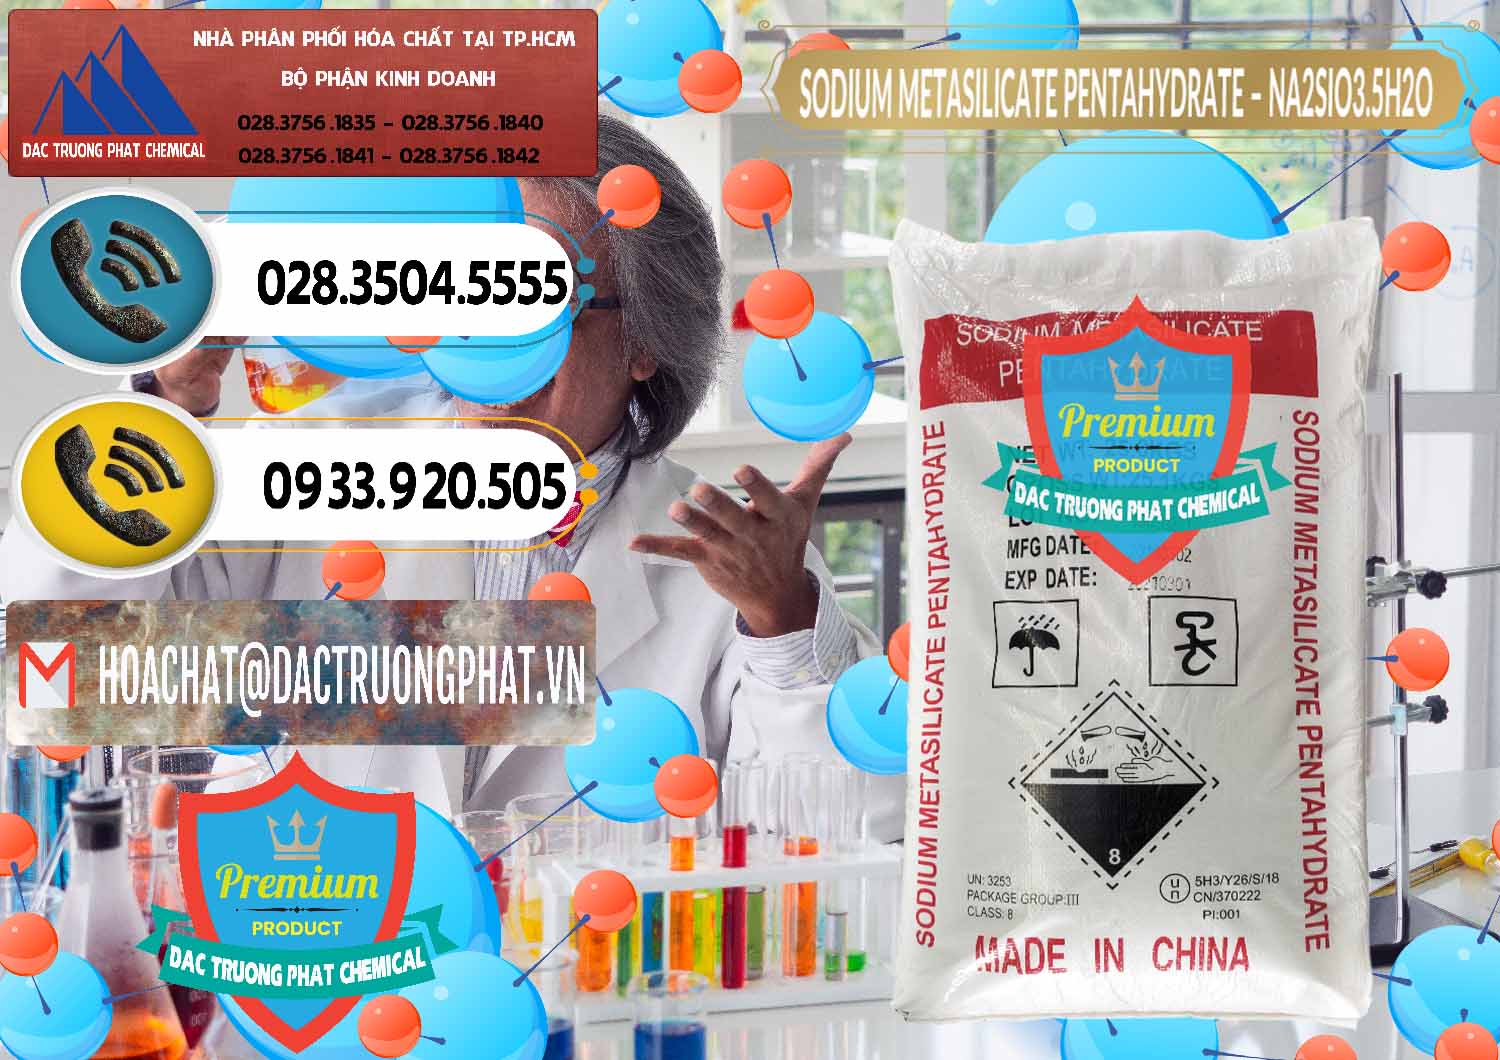 Cty nhập khẩu ( bán ) Sodium Metasilicate Pentahydrate – Silicate Bột Trung Quốc China - 0147 - Nơi chuyên cung ứng - phân phối hóa chất tại TP.HCM - hoachatdetnhuom.vn